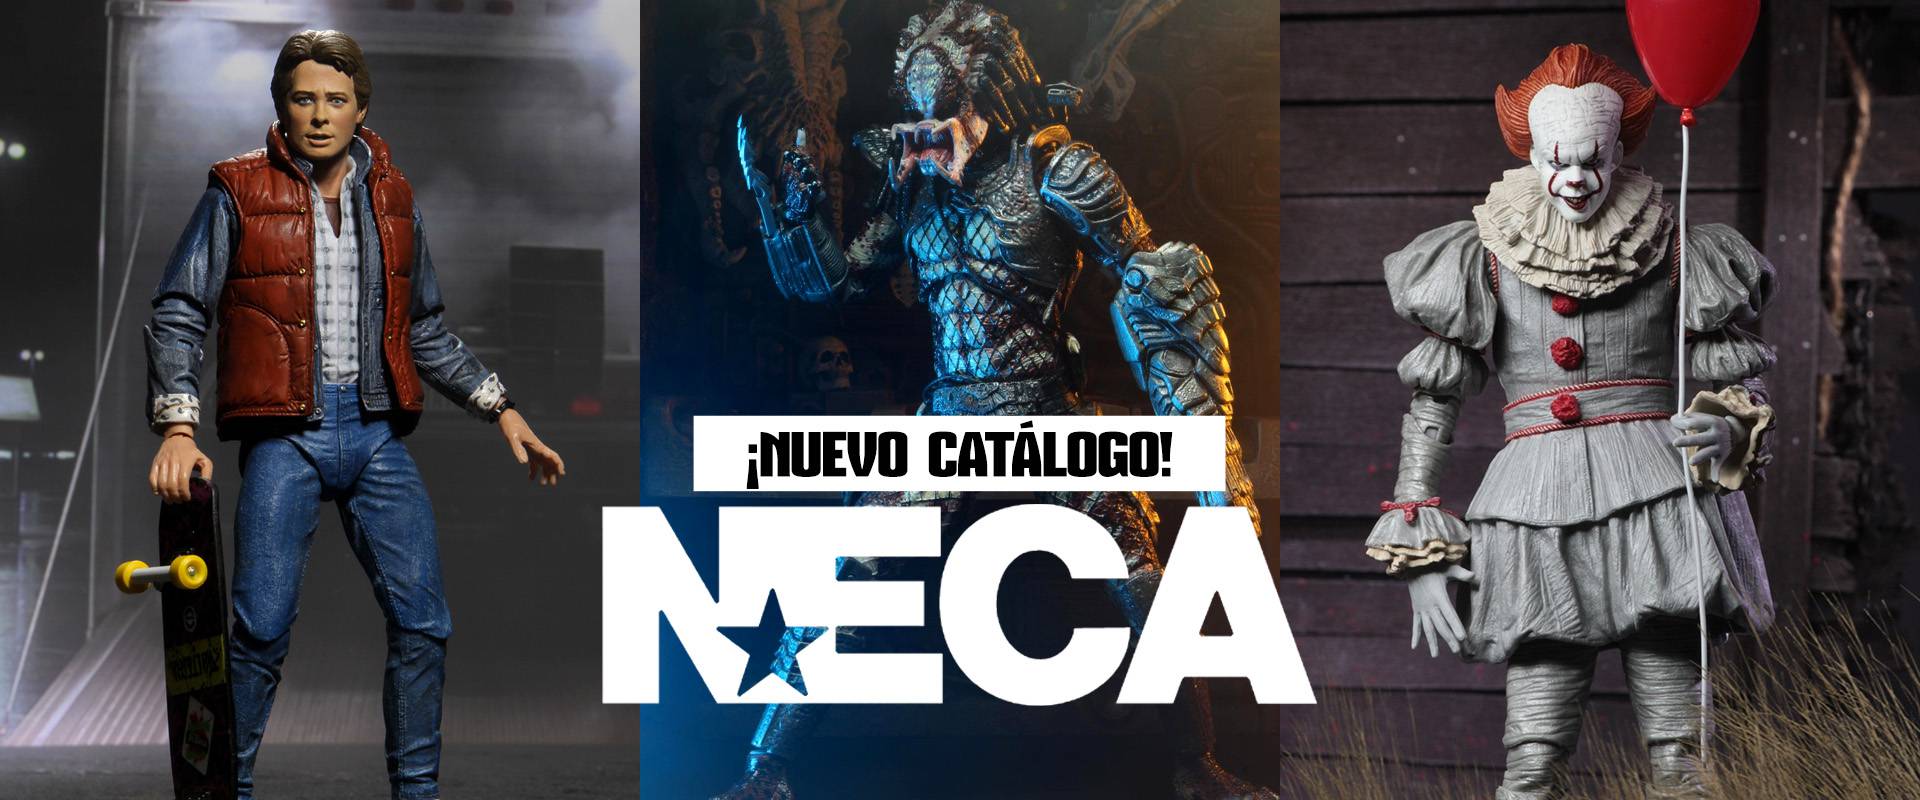 Catálogo NECA